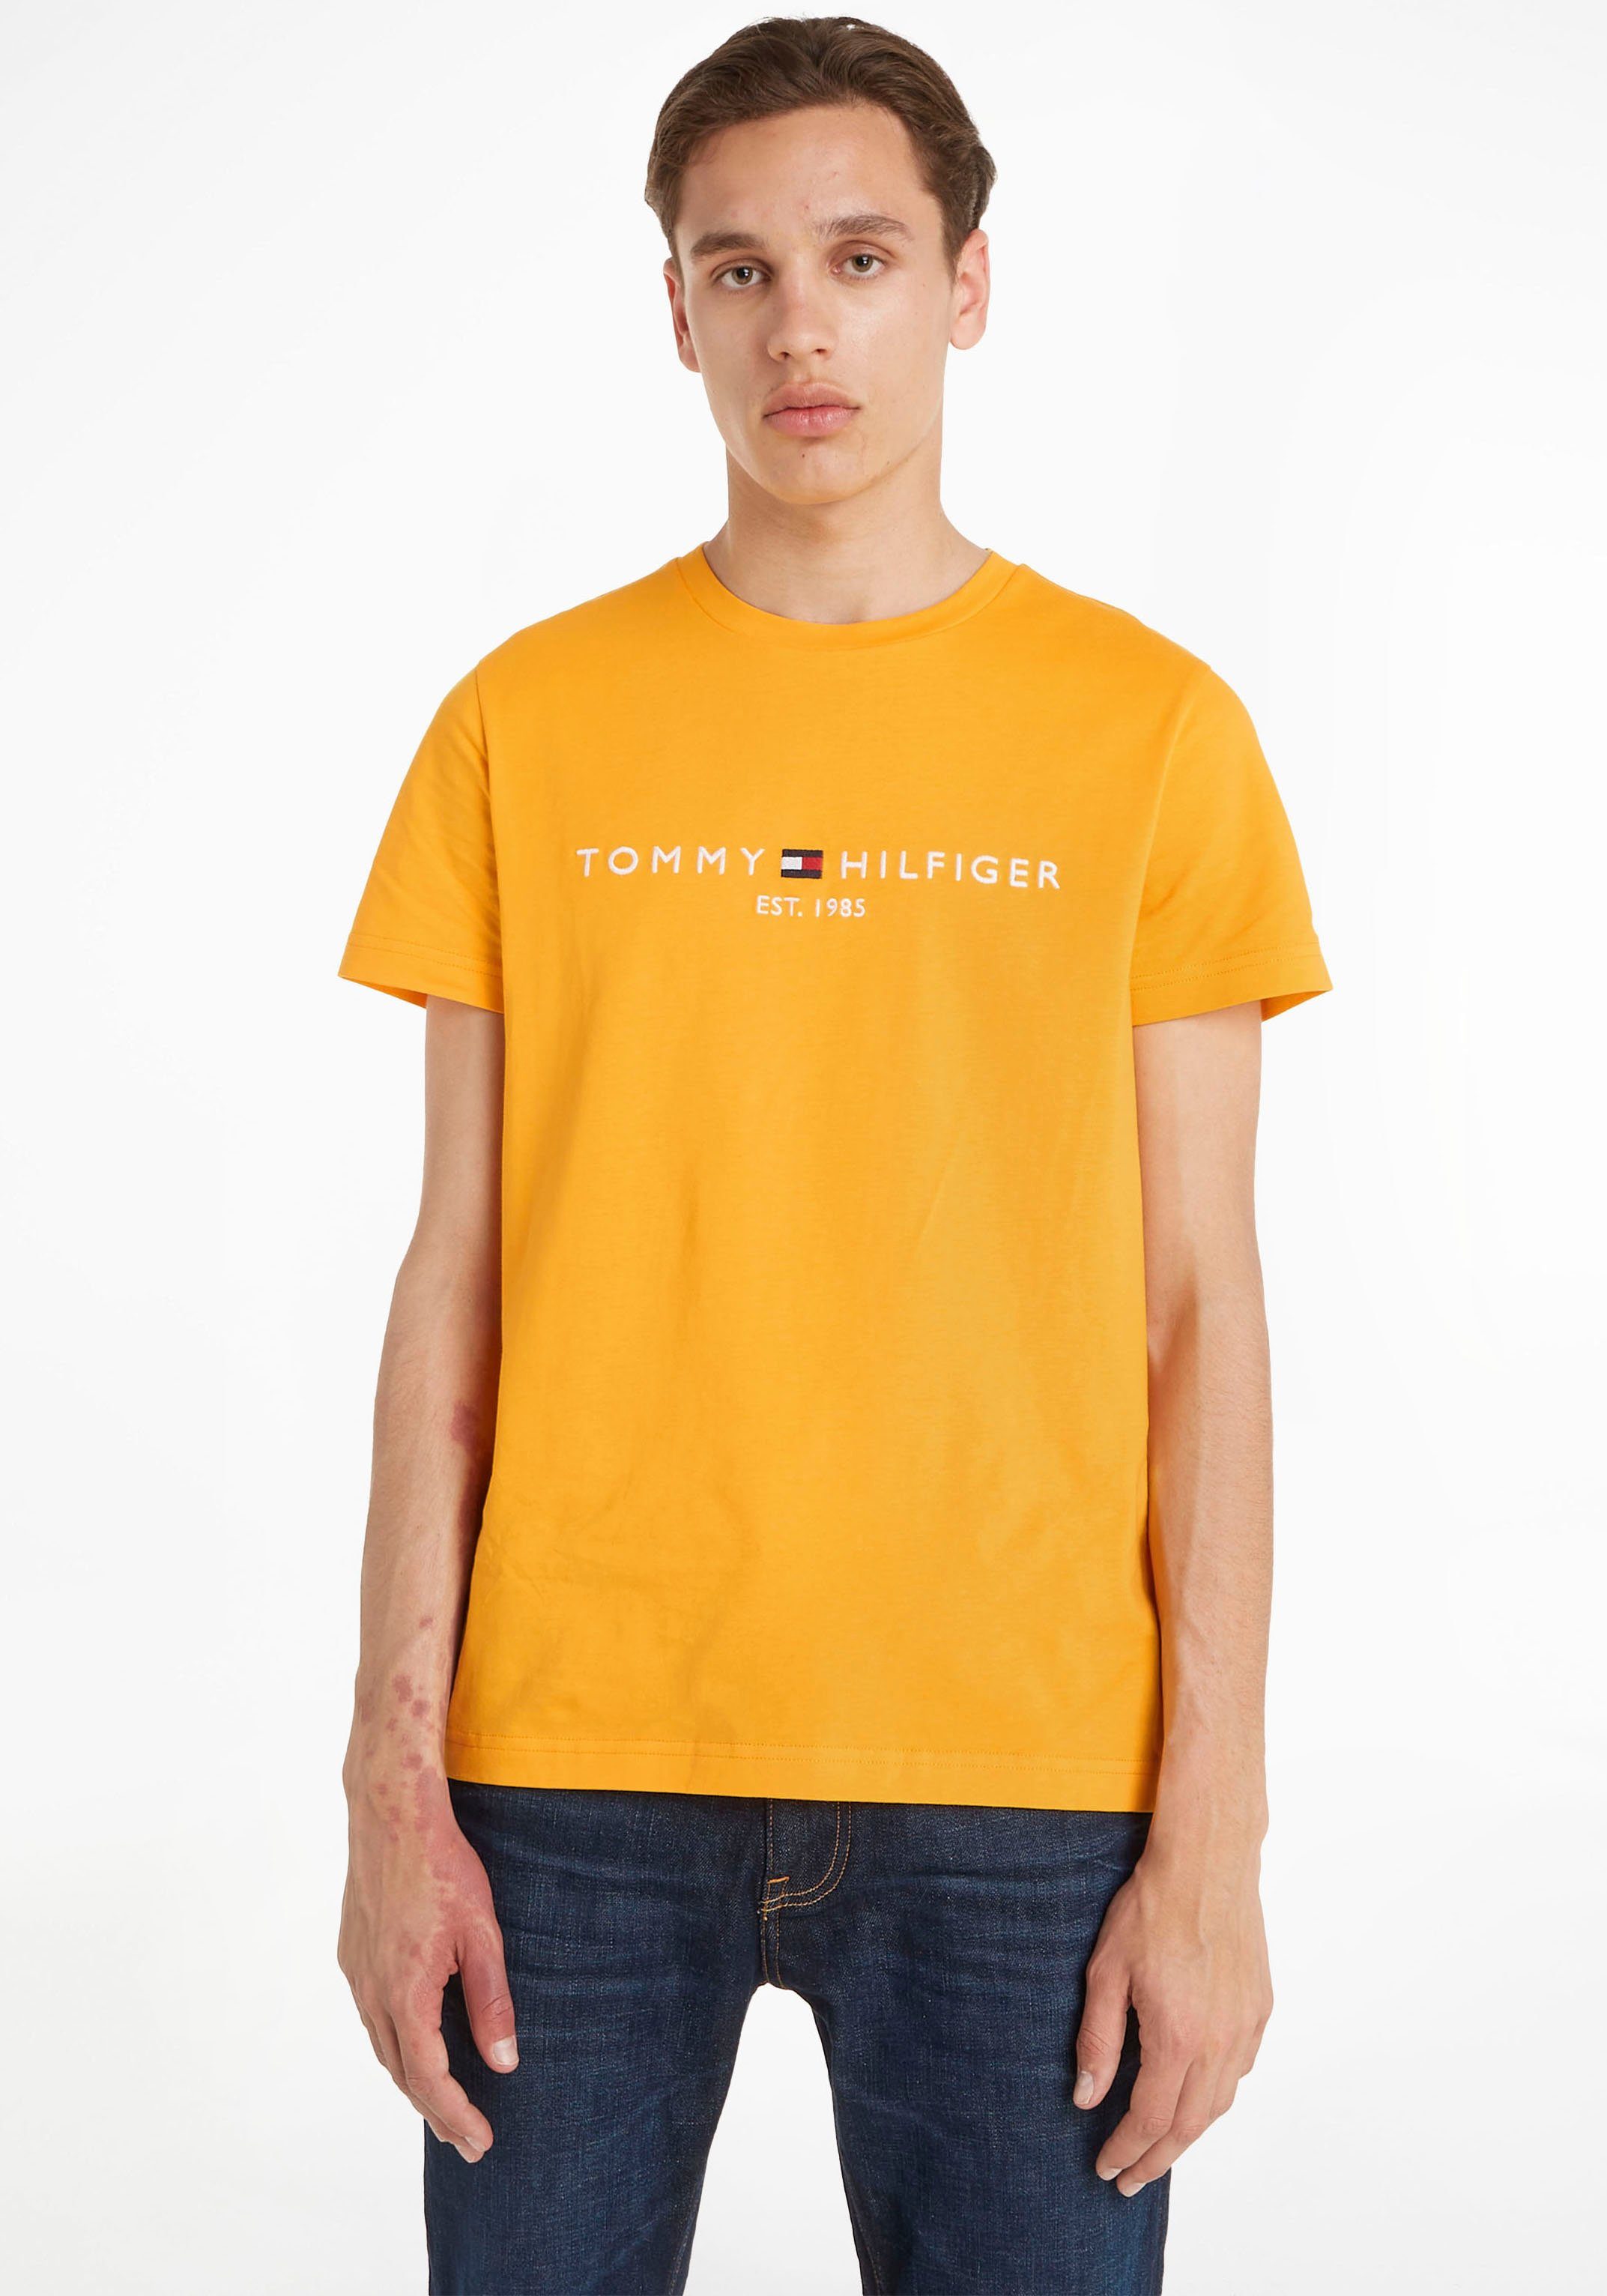 nachhaltiger TOMMY T-Shirt reiner, TEE Tommy Hilfiger LOGO aus Baumwolle